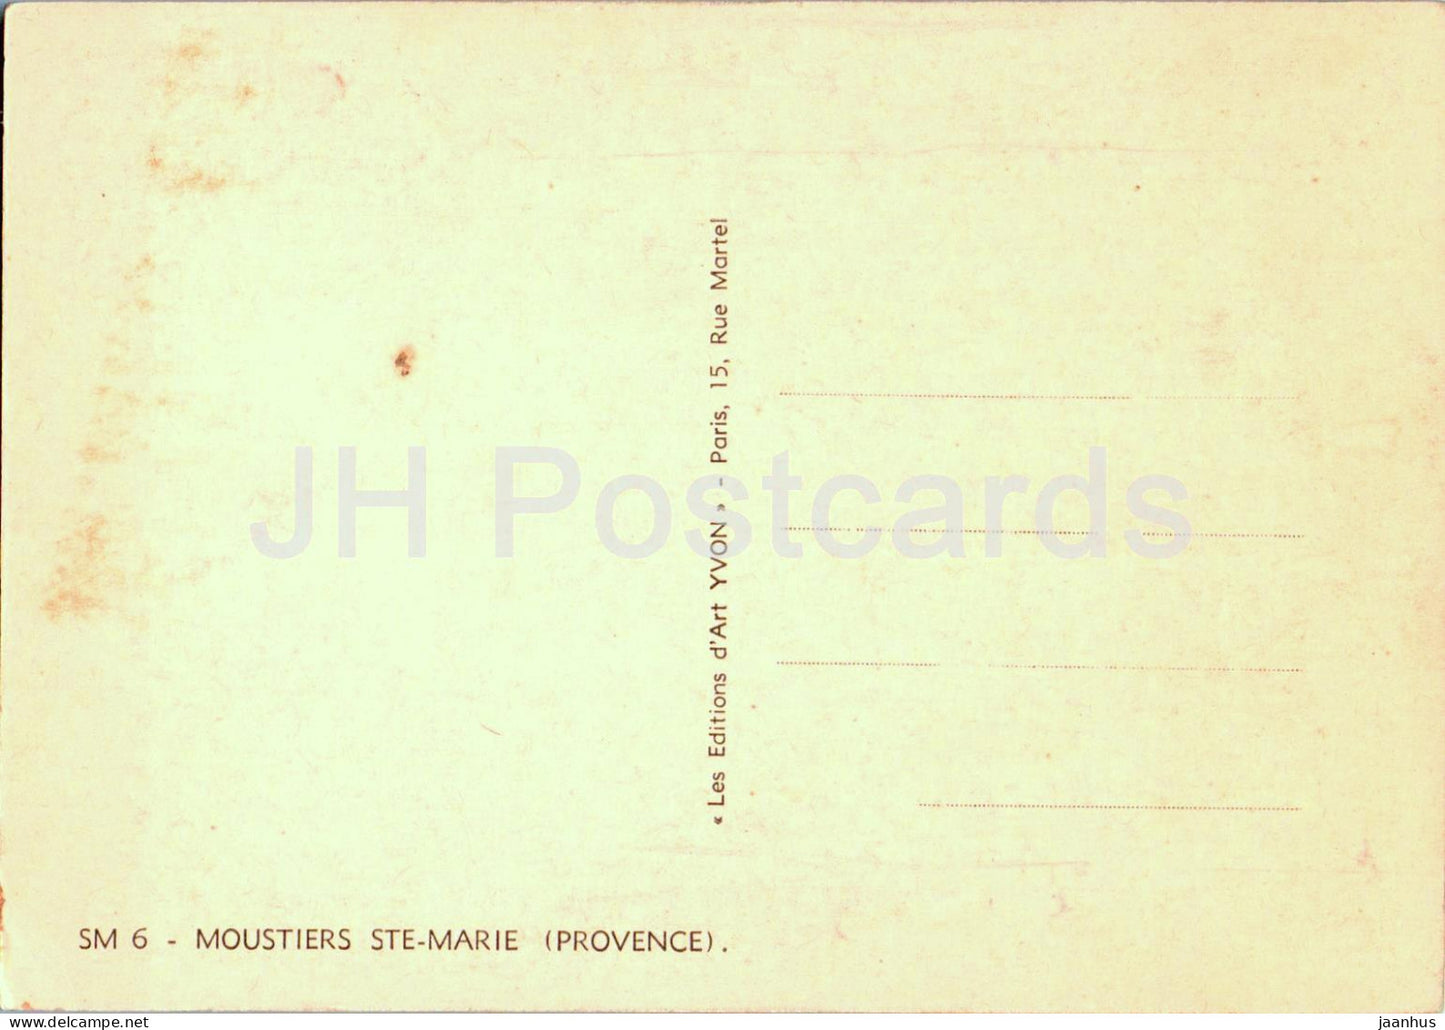 Moustiers Ste Marie - Provence - SM 6 - carte postale ancienne - France - inutilisée 